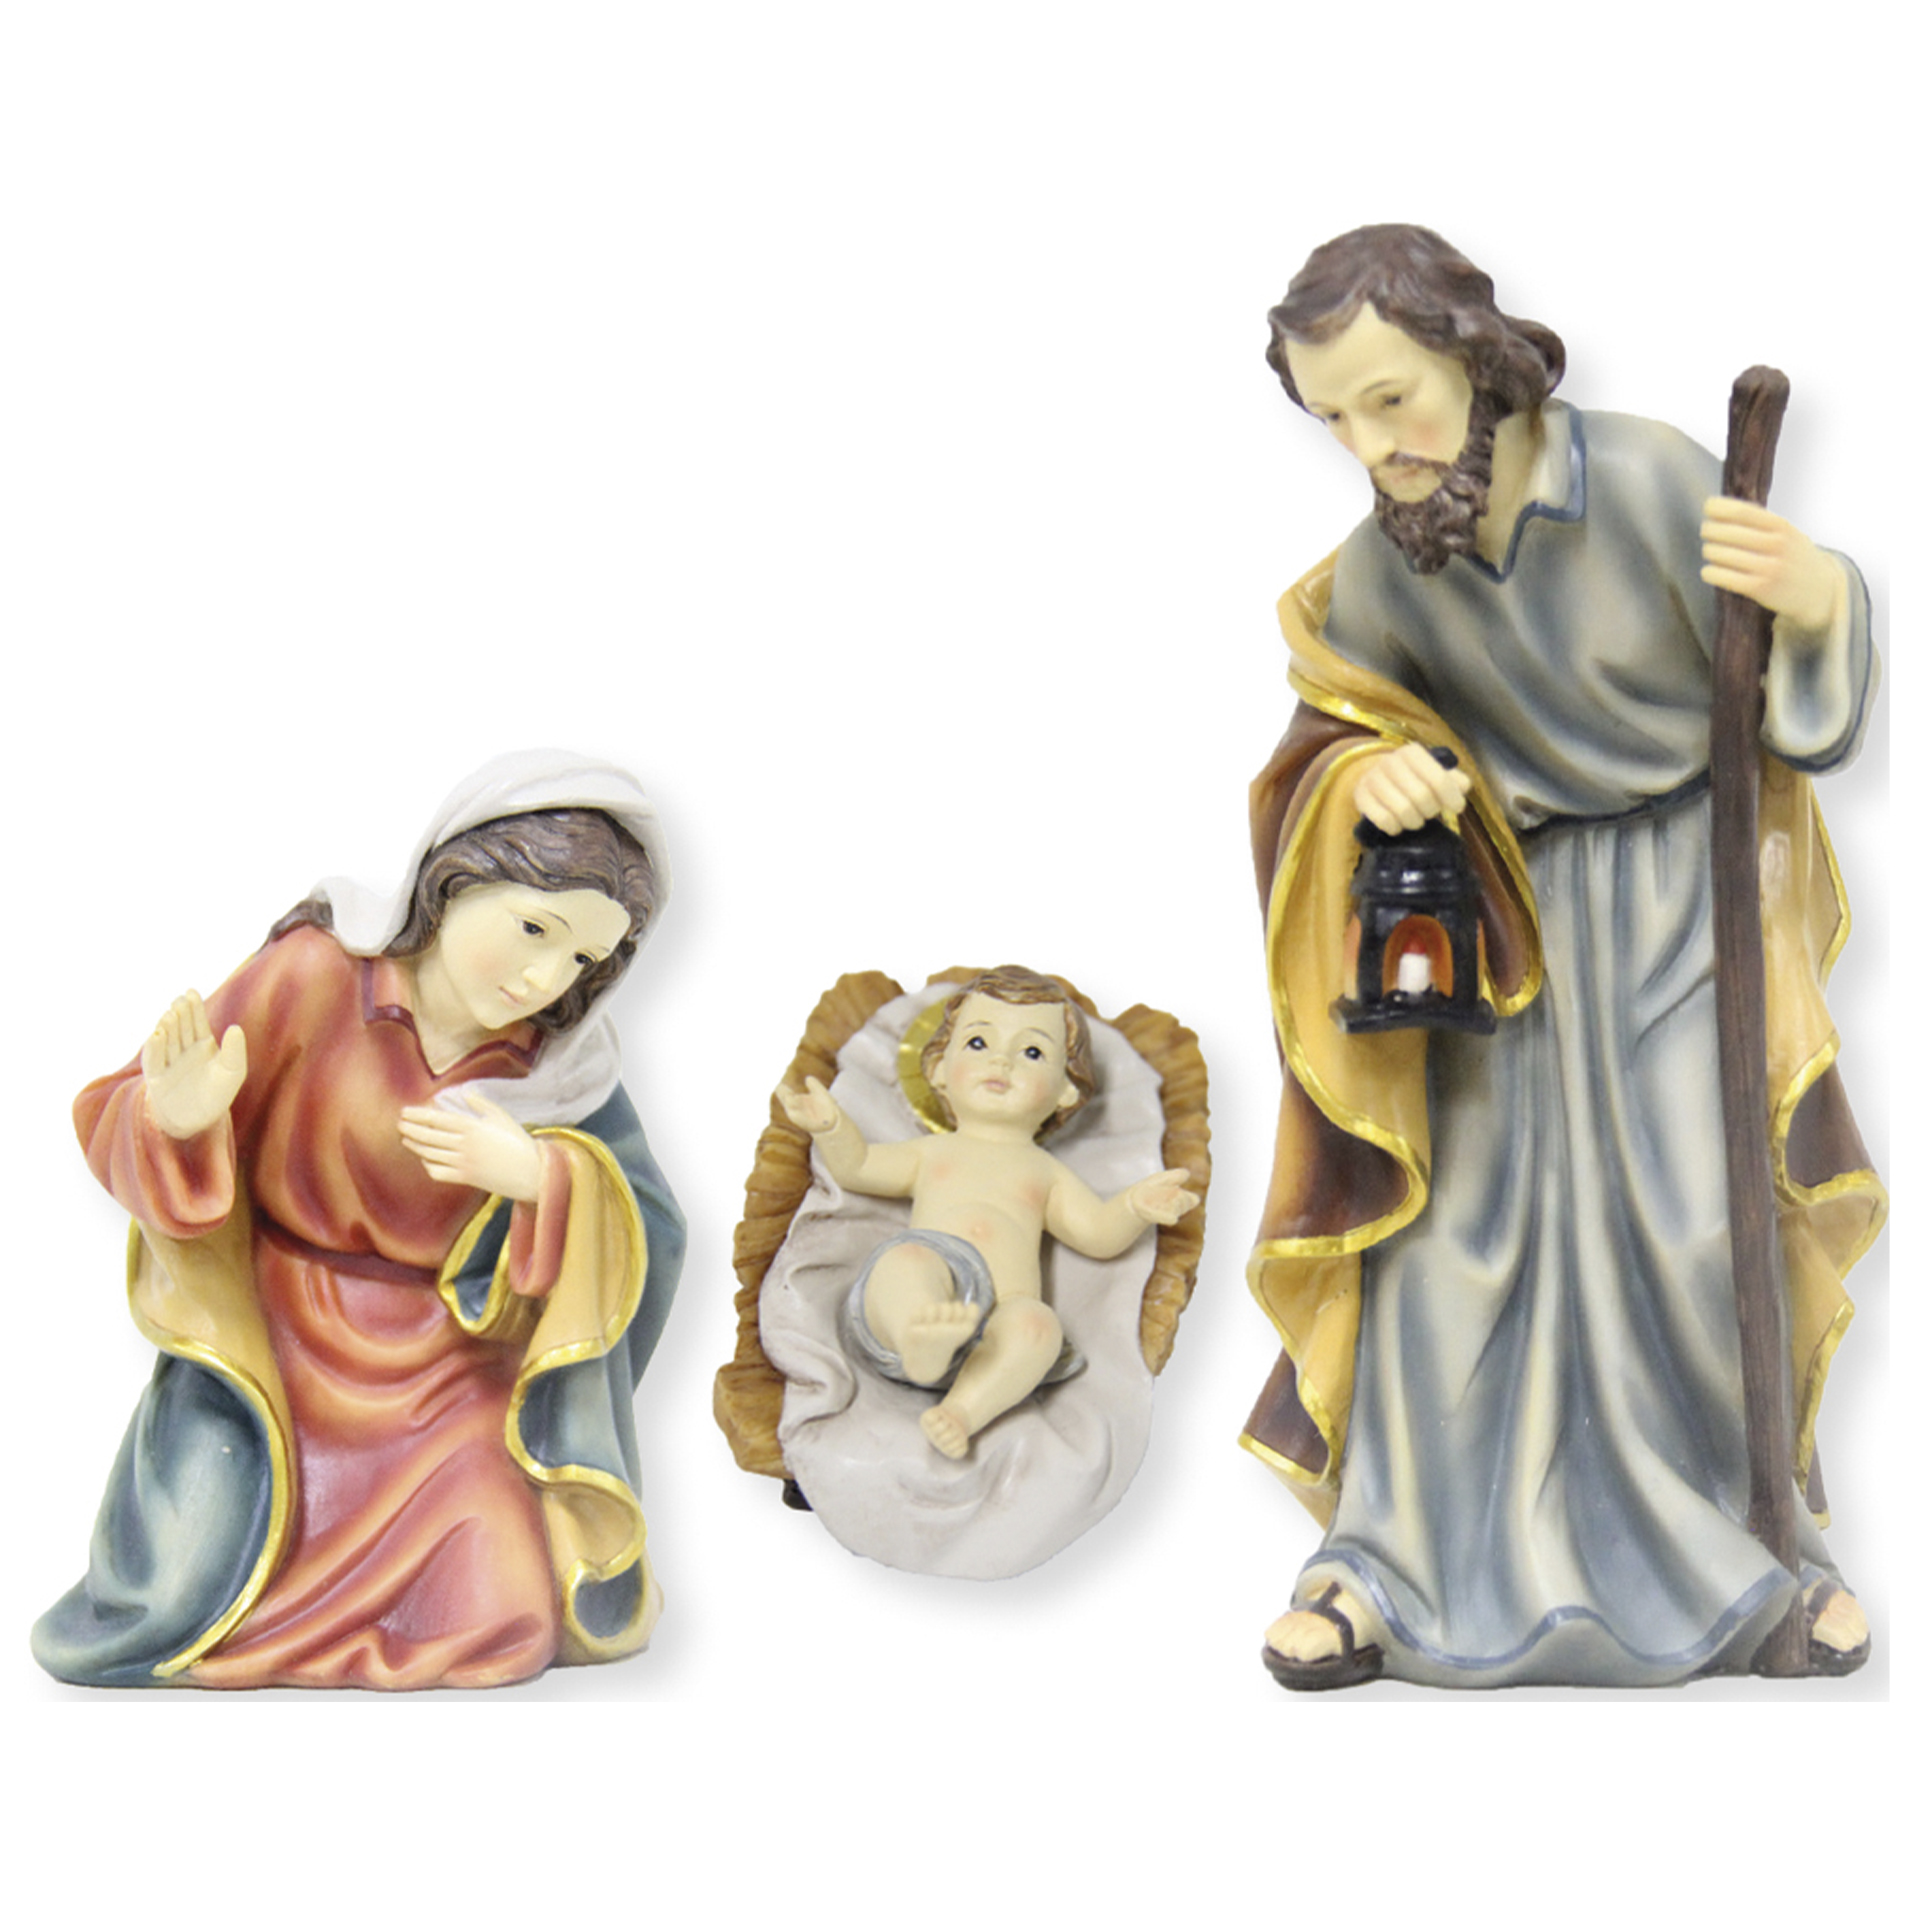 Krippenfiguren Hl. Familie Mathias-Krippe 3tlg.  zur Gestaltung Ihrer Krippe